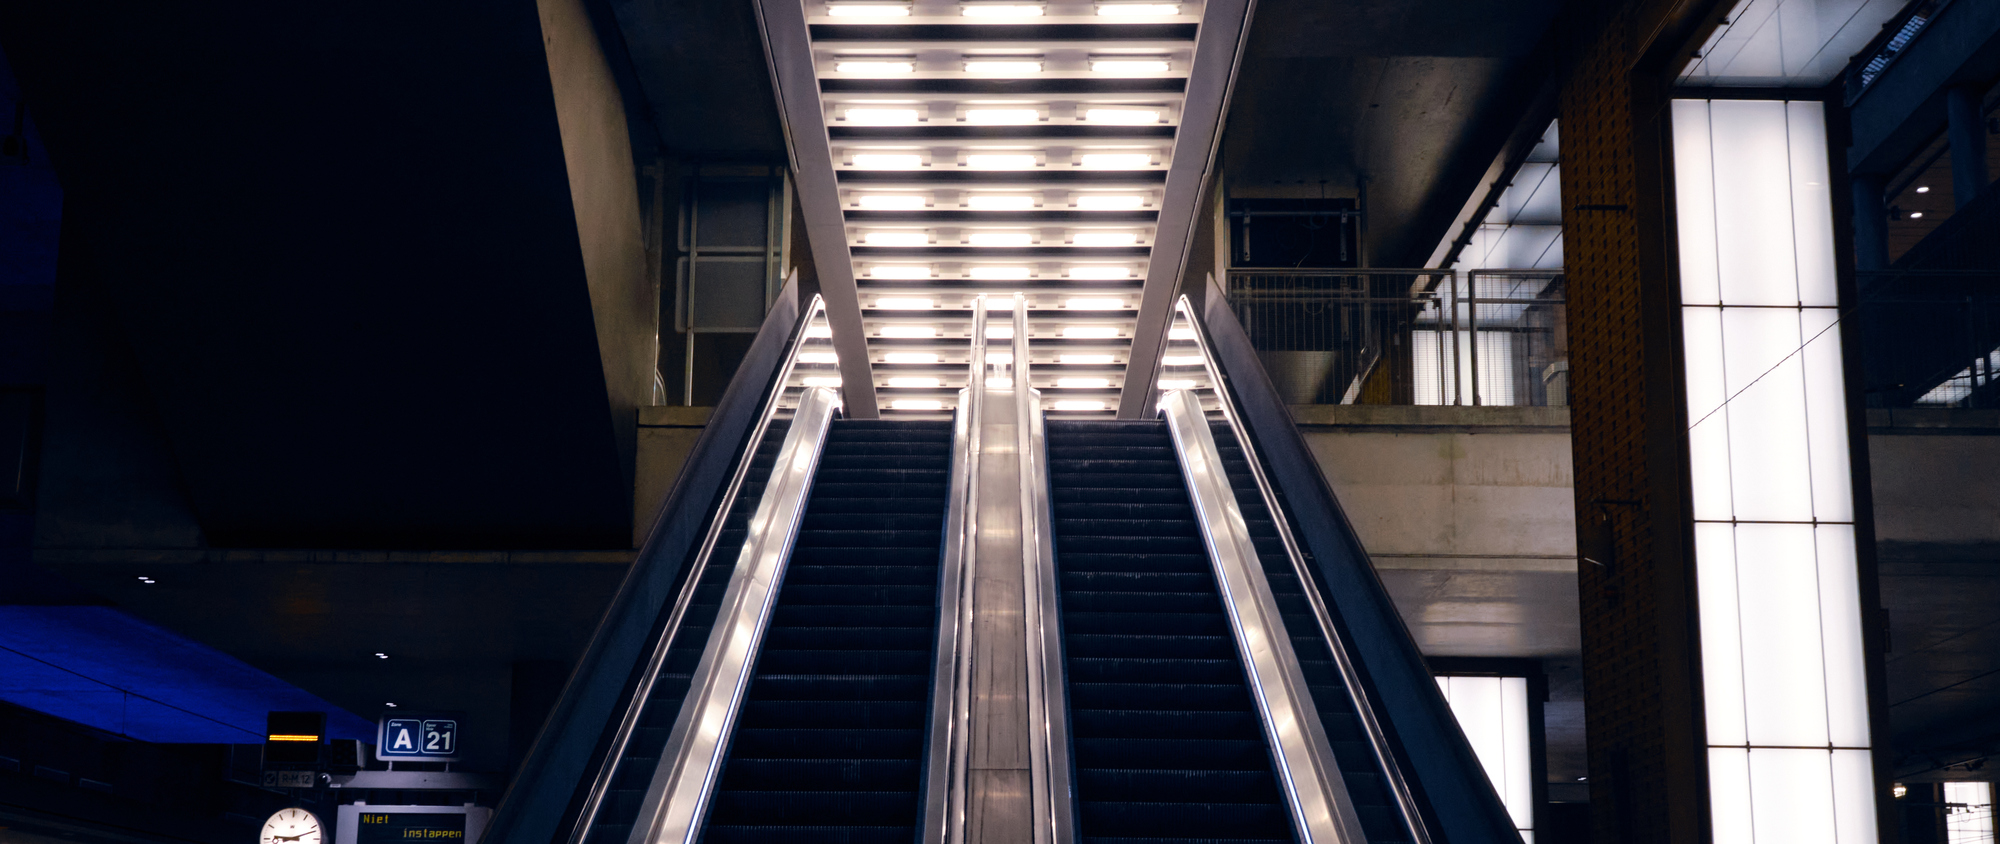 Antwerpen - Escalator of Lights